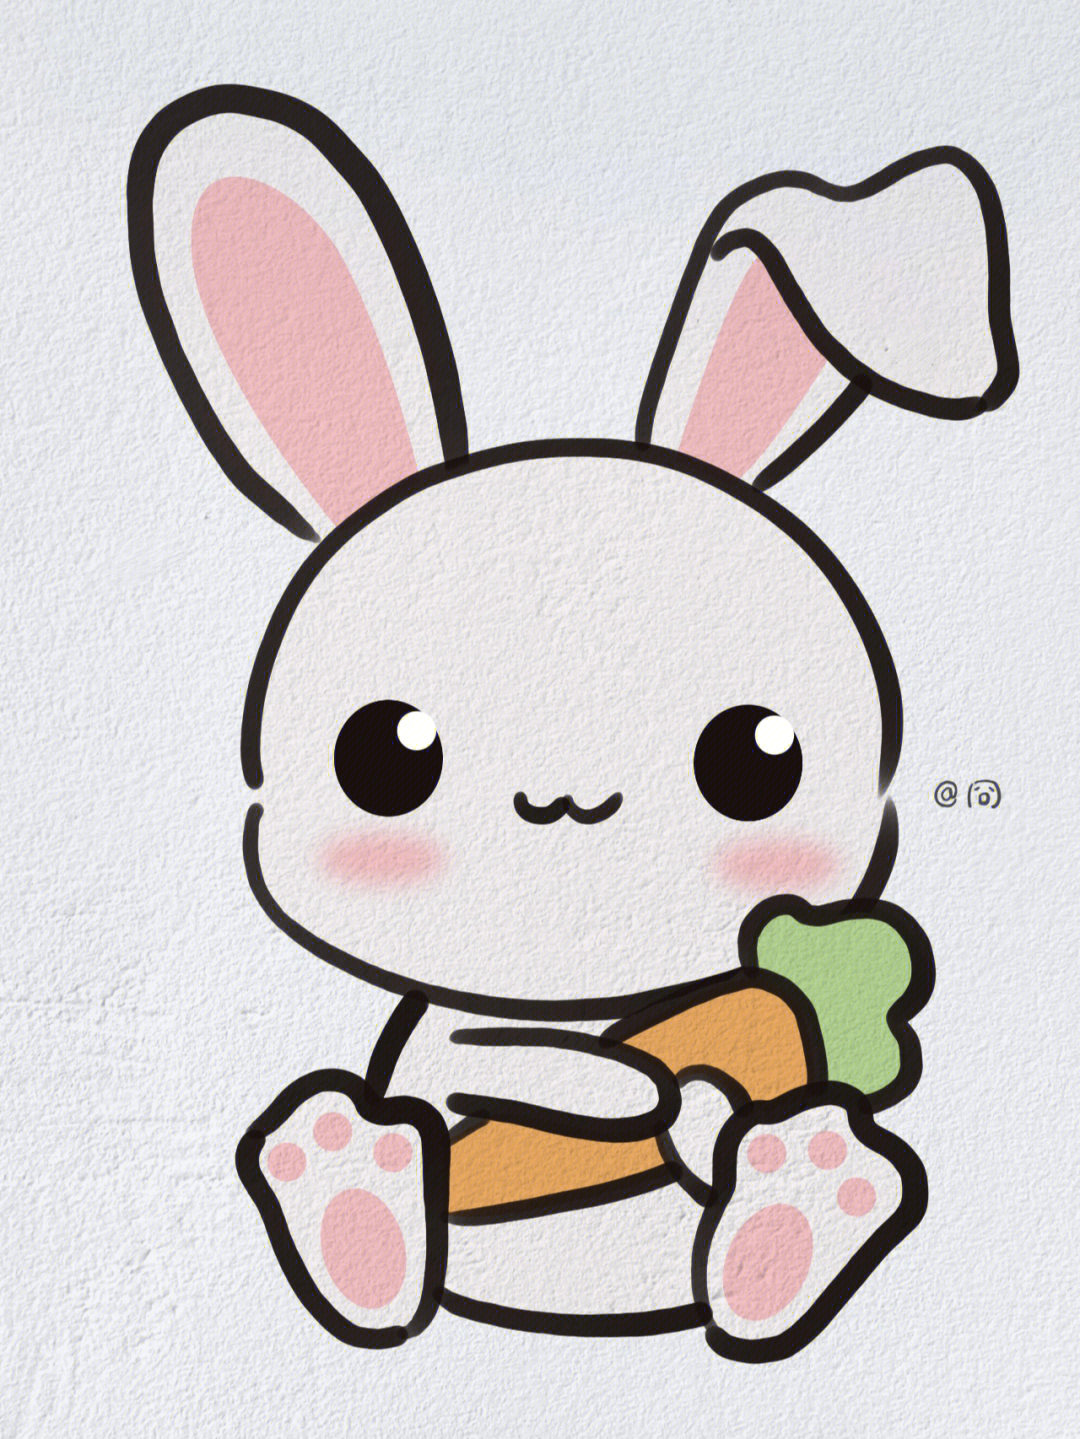 我要画可爱的小白兔图片